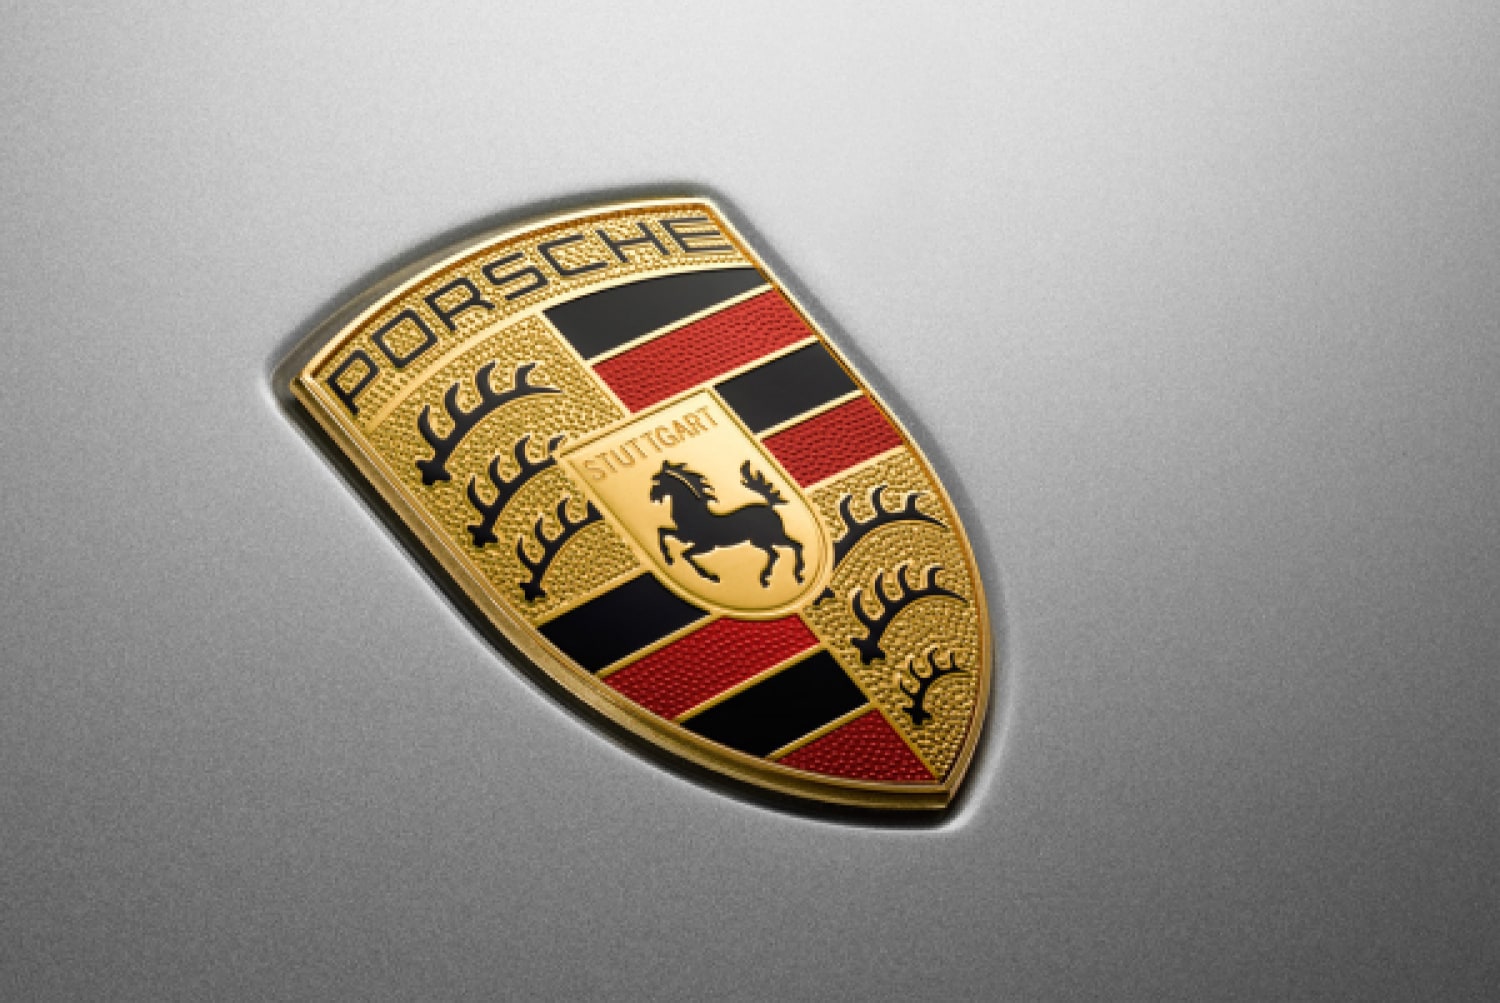 2021 Porsche Cayenne 